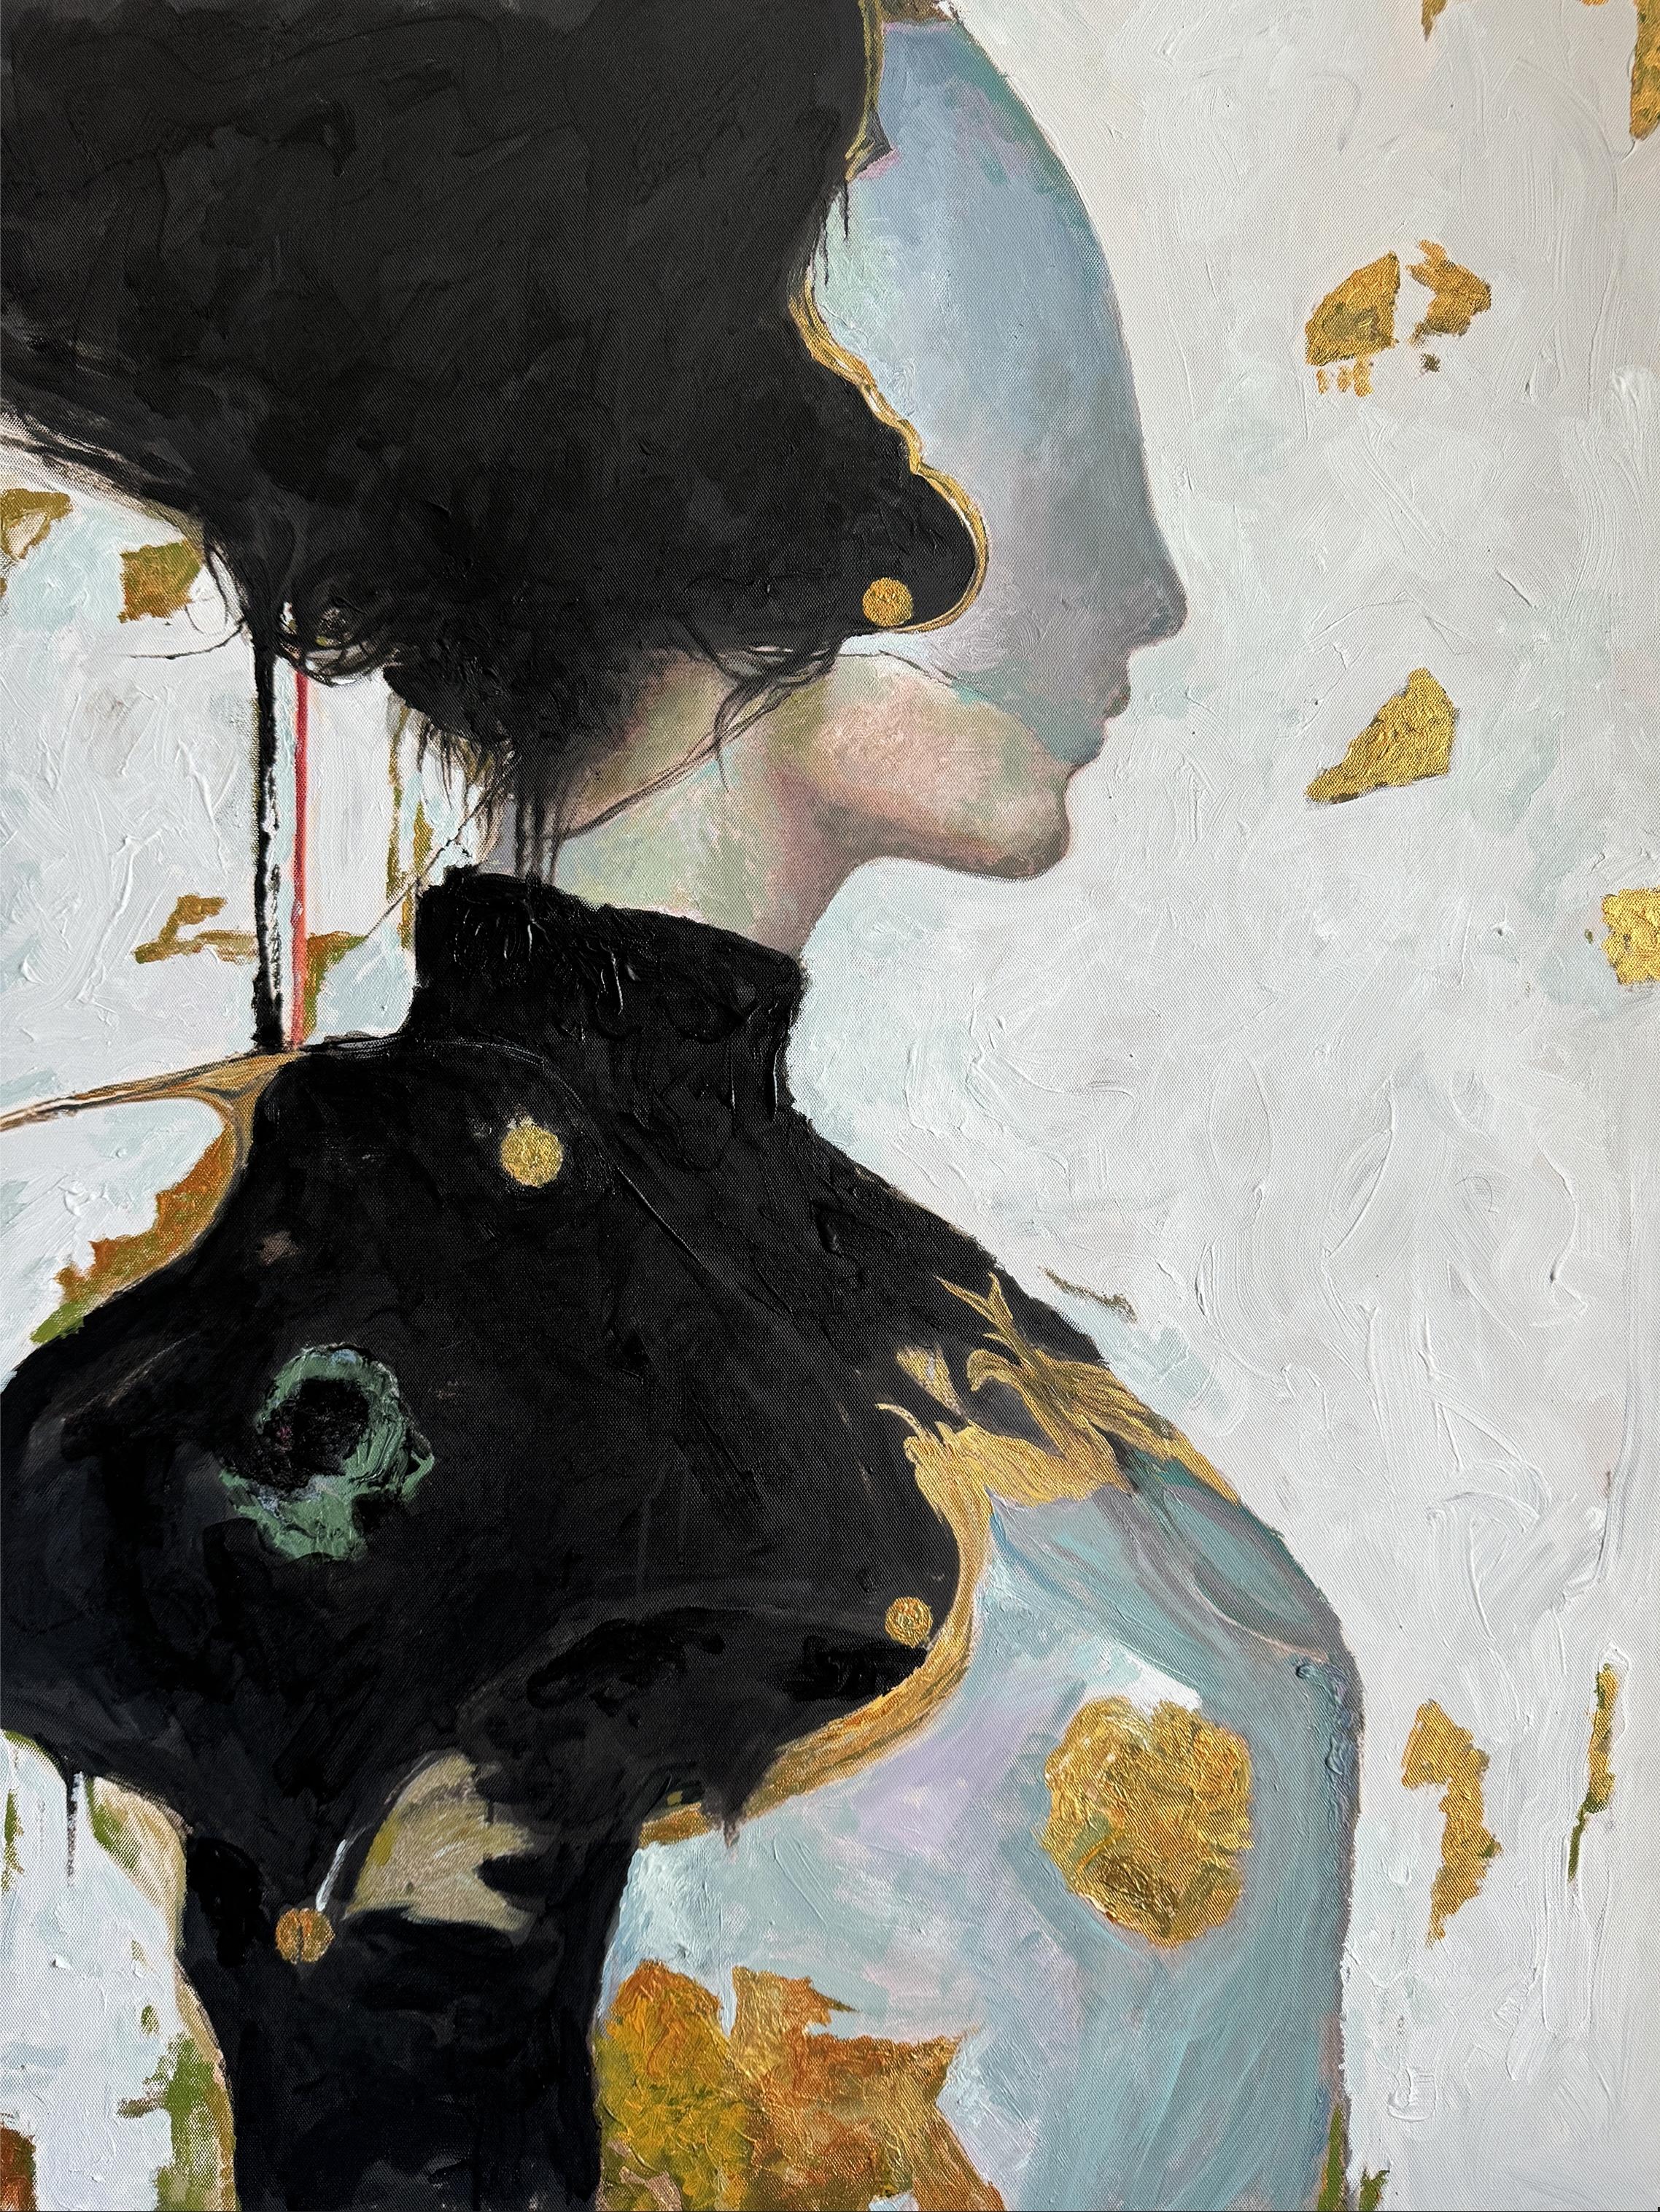 Peinture "Iv" 35" x 28" inch par Vladislav Chenchik

Vladislav Chenchik est un artiste contemporain ukrainien. Ses œuvres d'art combinent des styles abstraits et réalistes, en mettant l'accent sur la représentation des filles et la transmission de